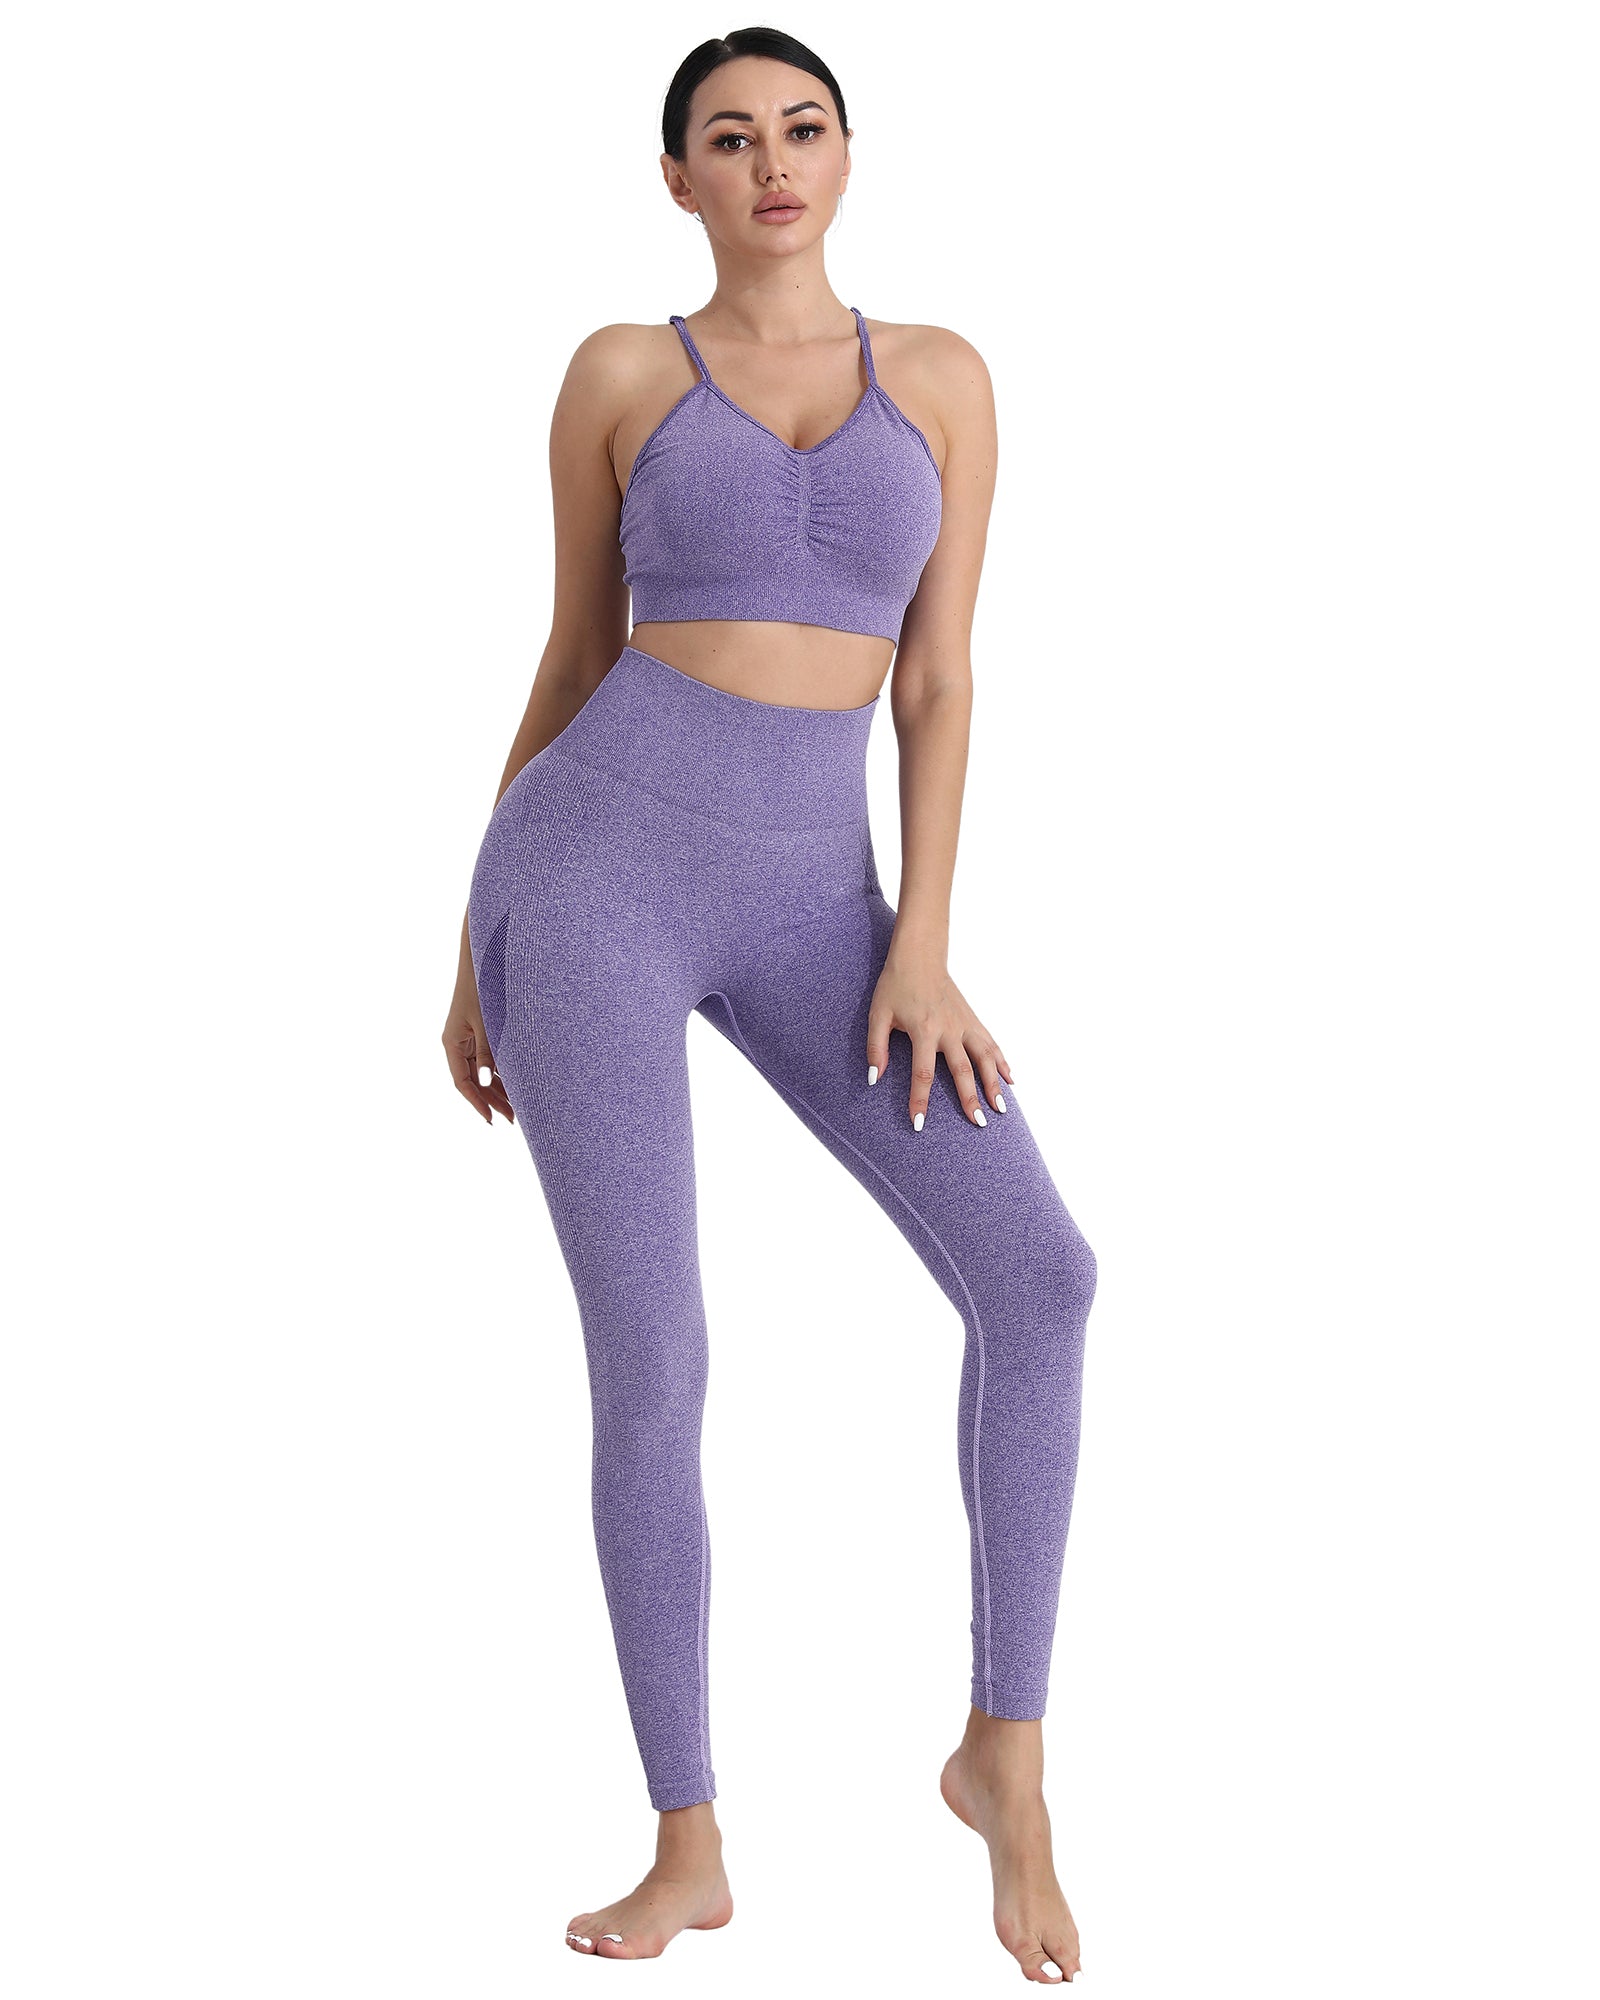 girl wearing purple yoga pants